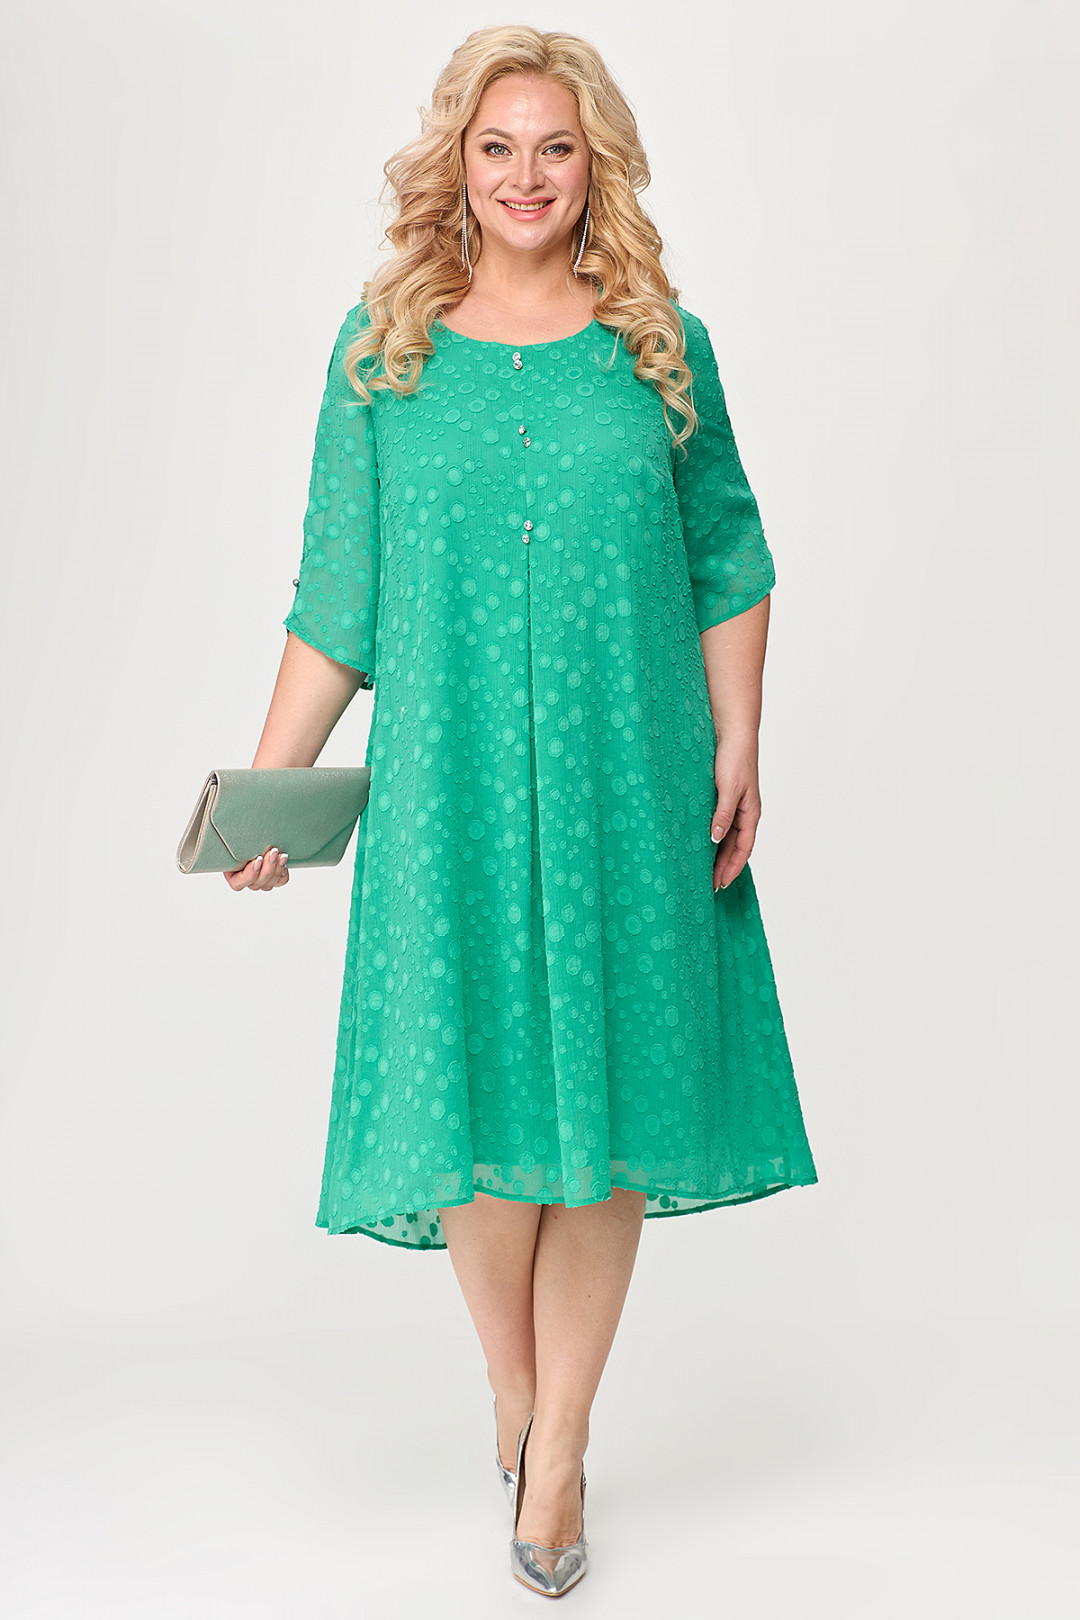 Платье ALGRANDA (Новелла Шарм) A3848-4-4